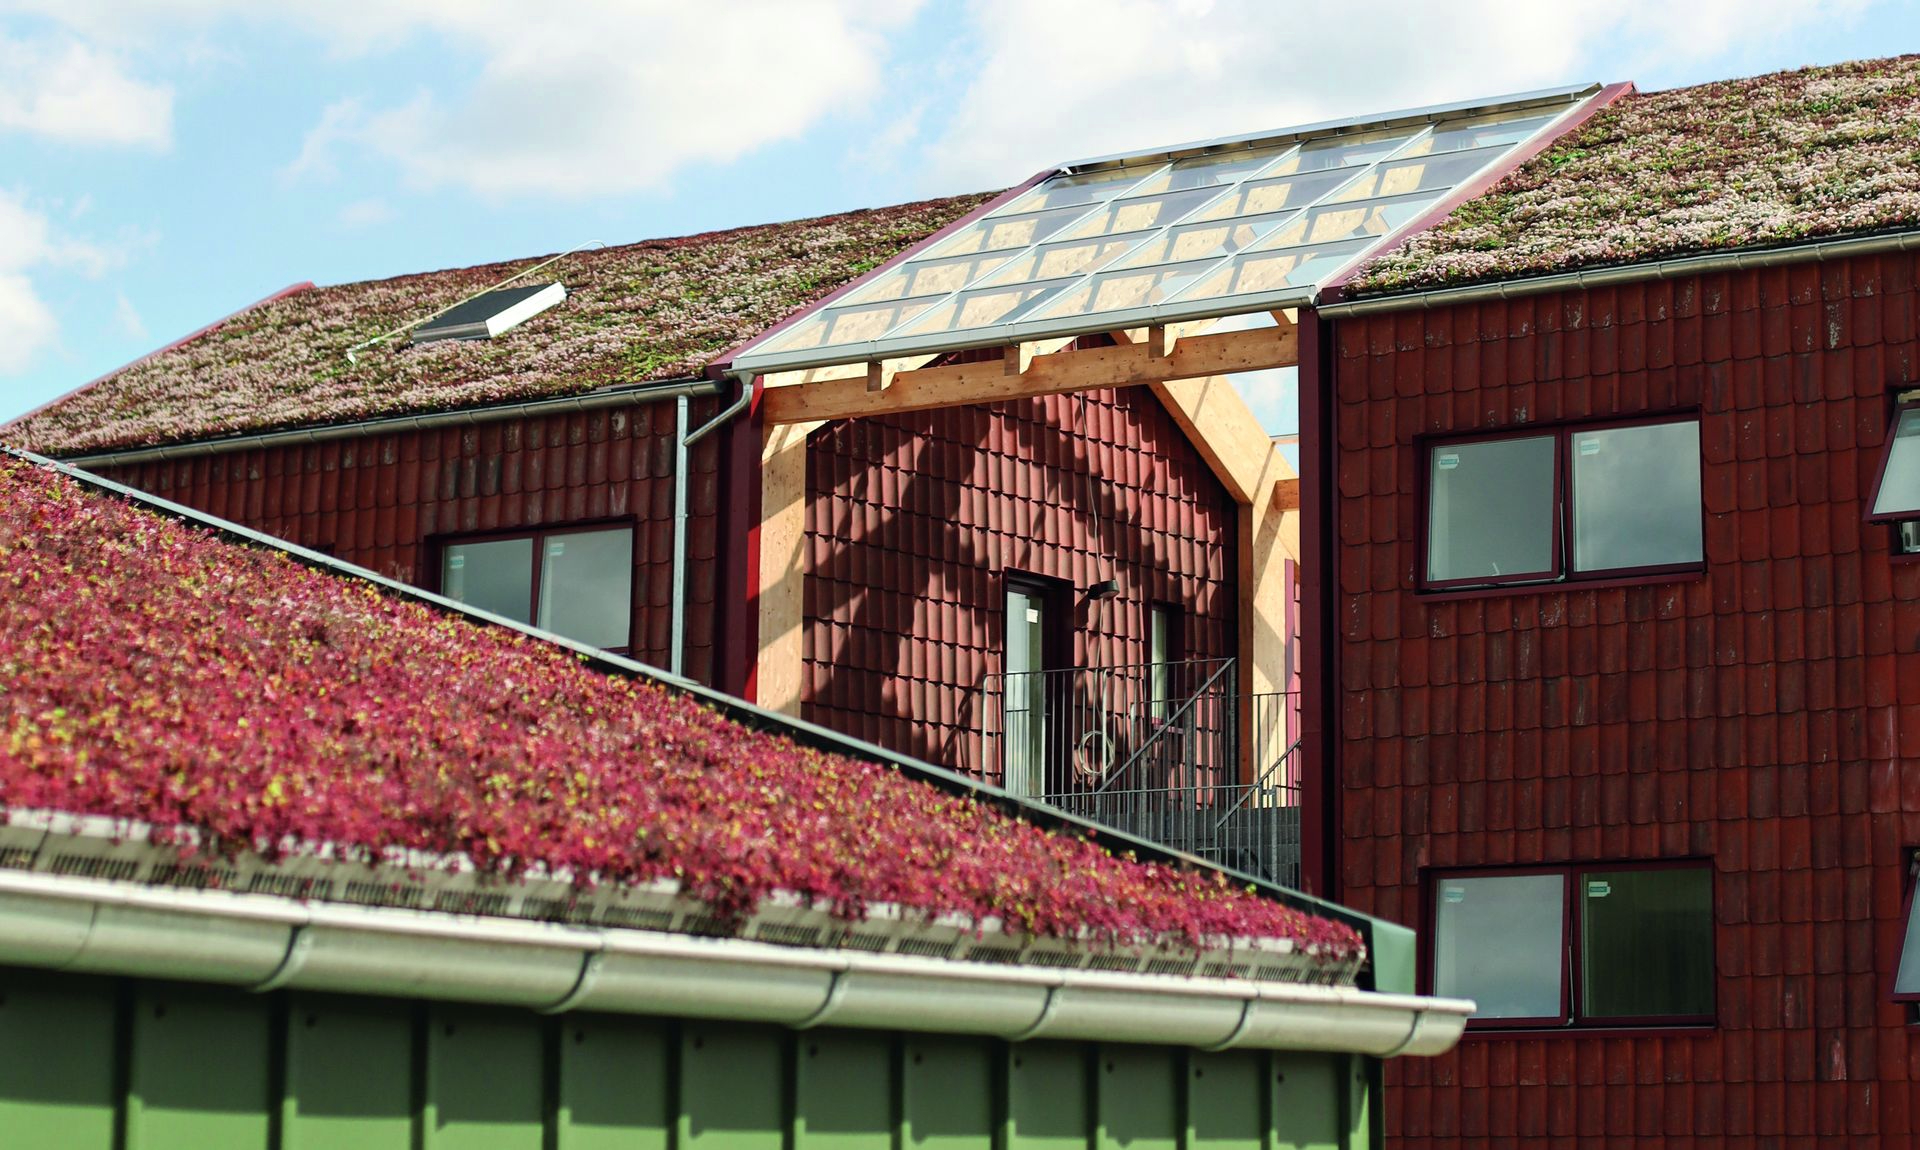 Dachbegrünung als architektonisches Konzept.